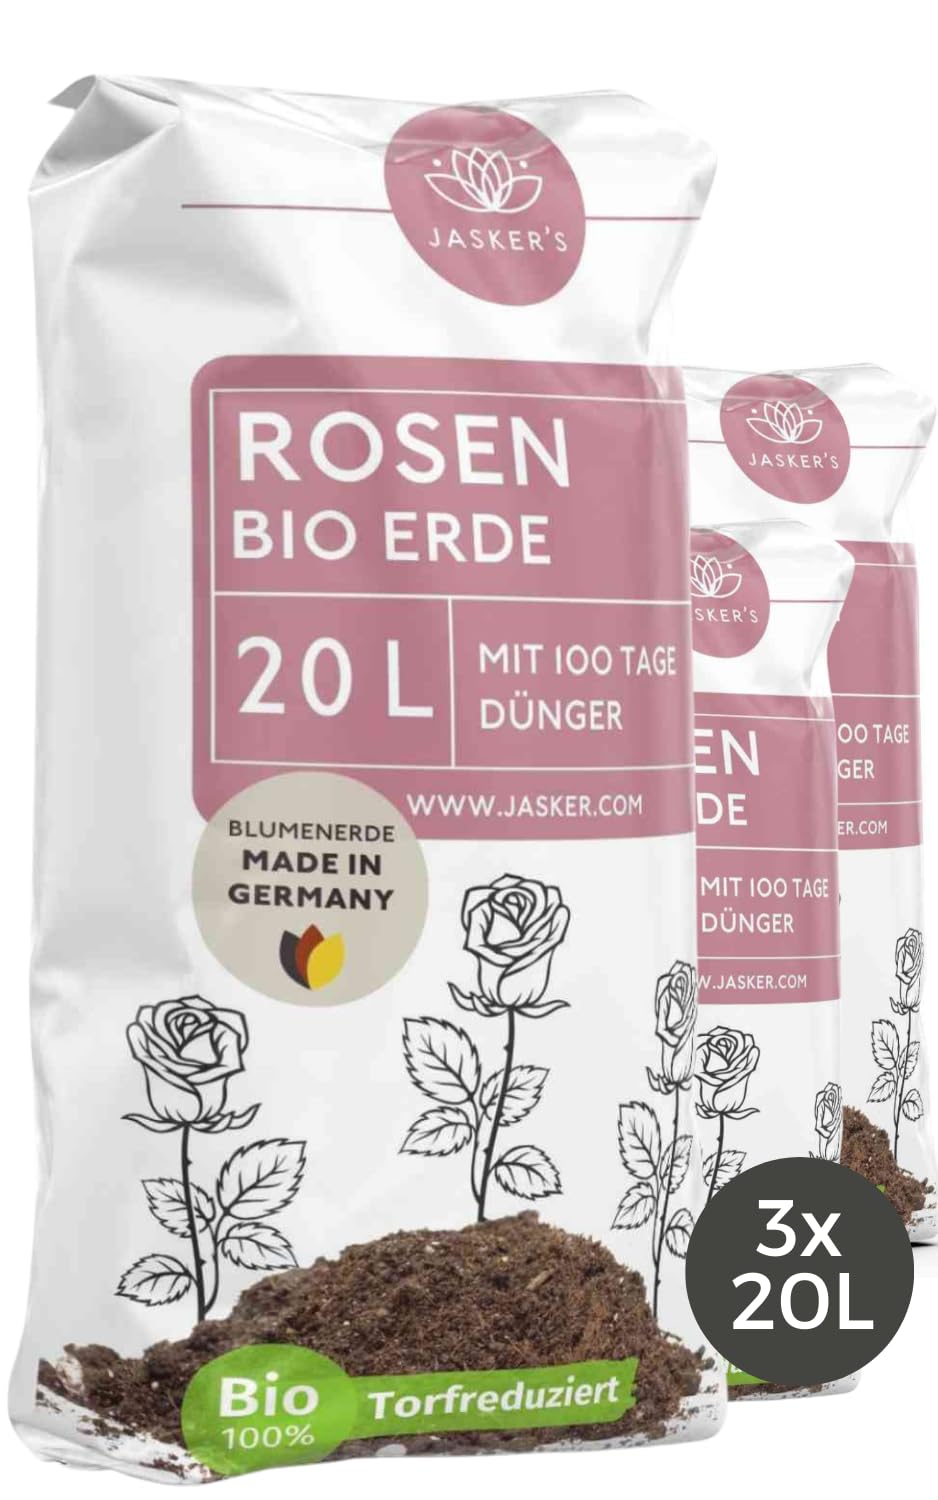 Bio Rosenerde 60 L (3x20L) - Blumenerde für Rosen aus 40% weniger Torf - Pflanzerde Rosen - Rosenerde für Kübel mit Dünger - Erde für Pflanzen - Rosen Anzucht Erde - Erde für Rosen - Rosen Erde